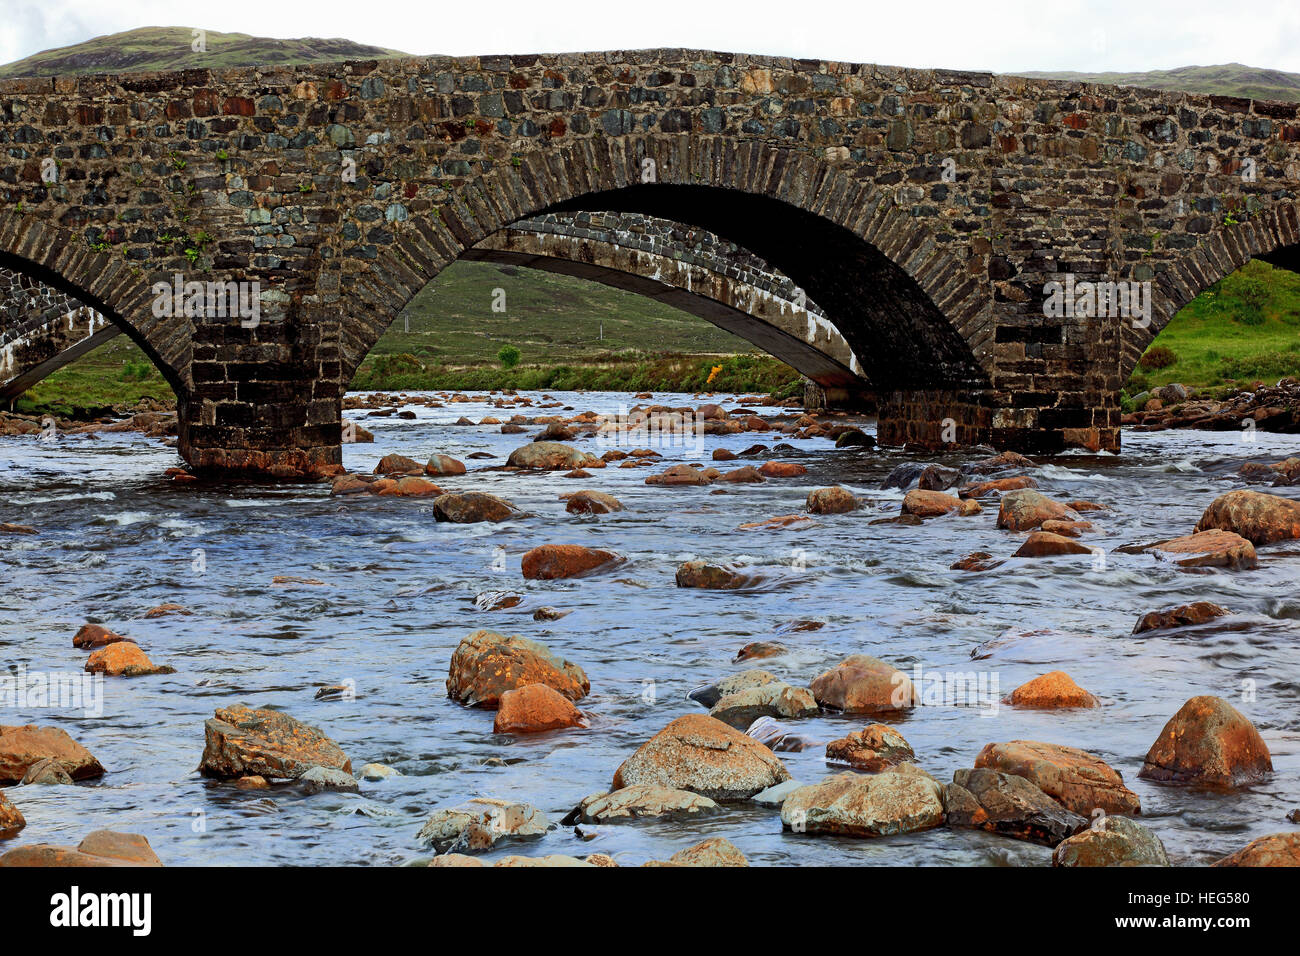 Schottland, die Inneren Hebriden, Isle of Skye, Landschaft bei der Sligachan, Brücke über den Fluss, Bach Sligachan, alte Steinbrücke Stock Photo